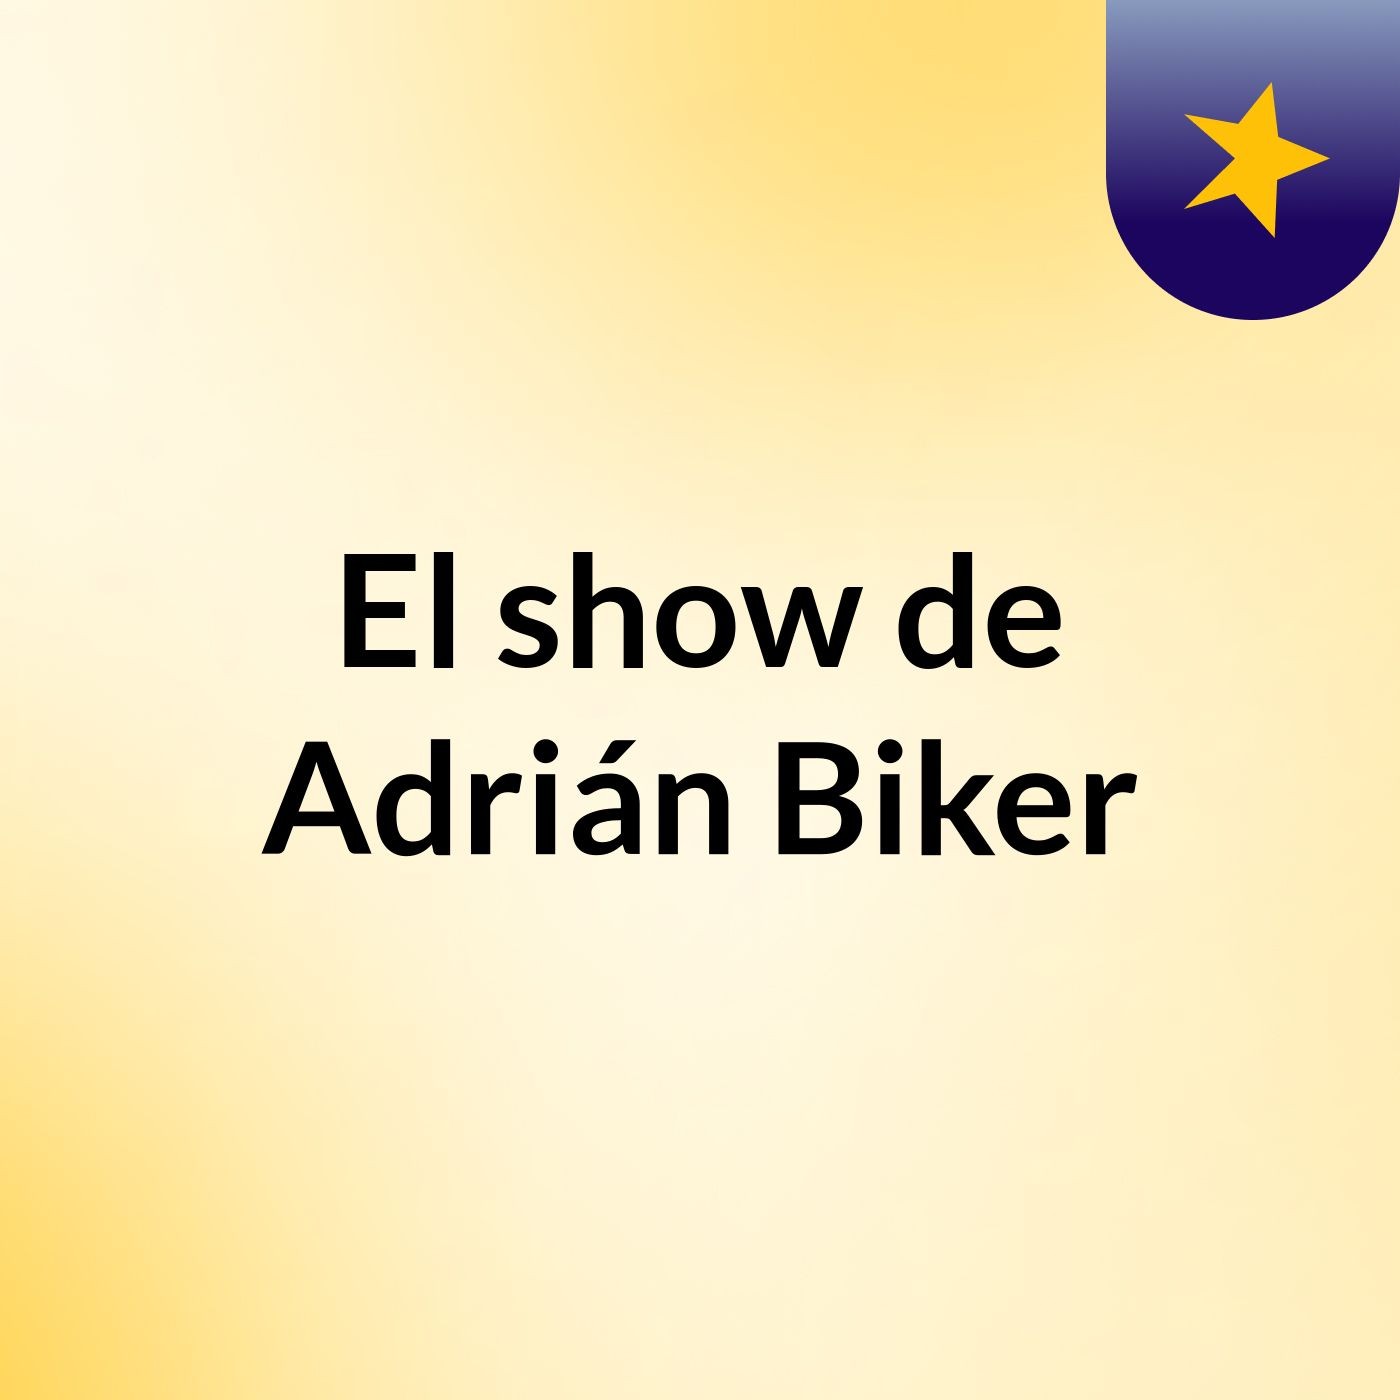 El show de Adrián Biker